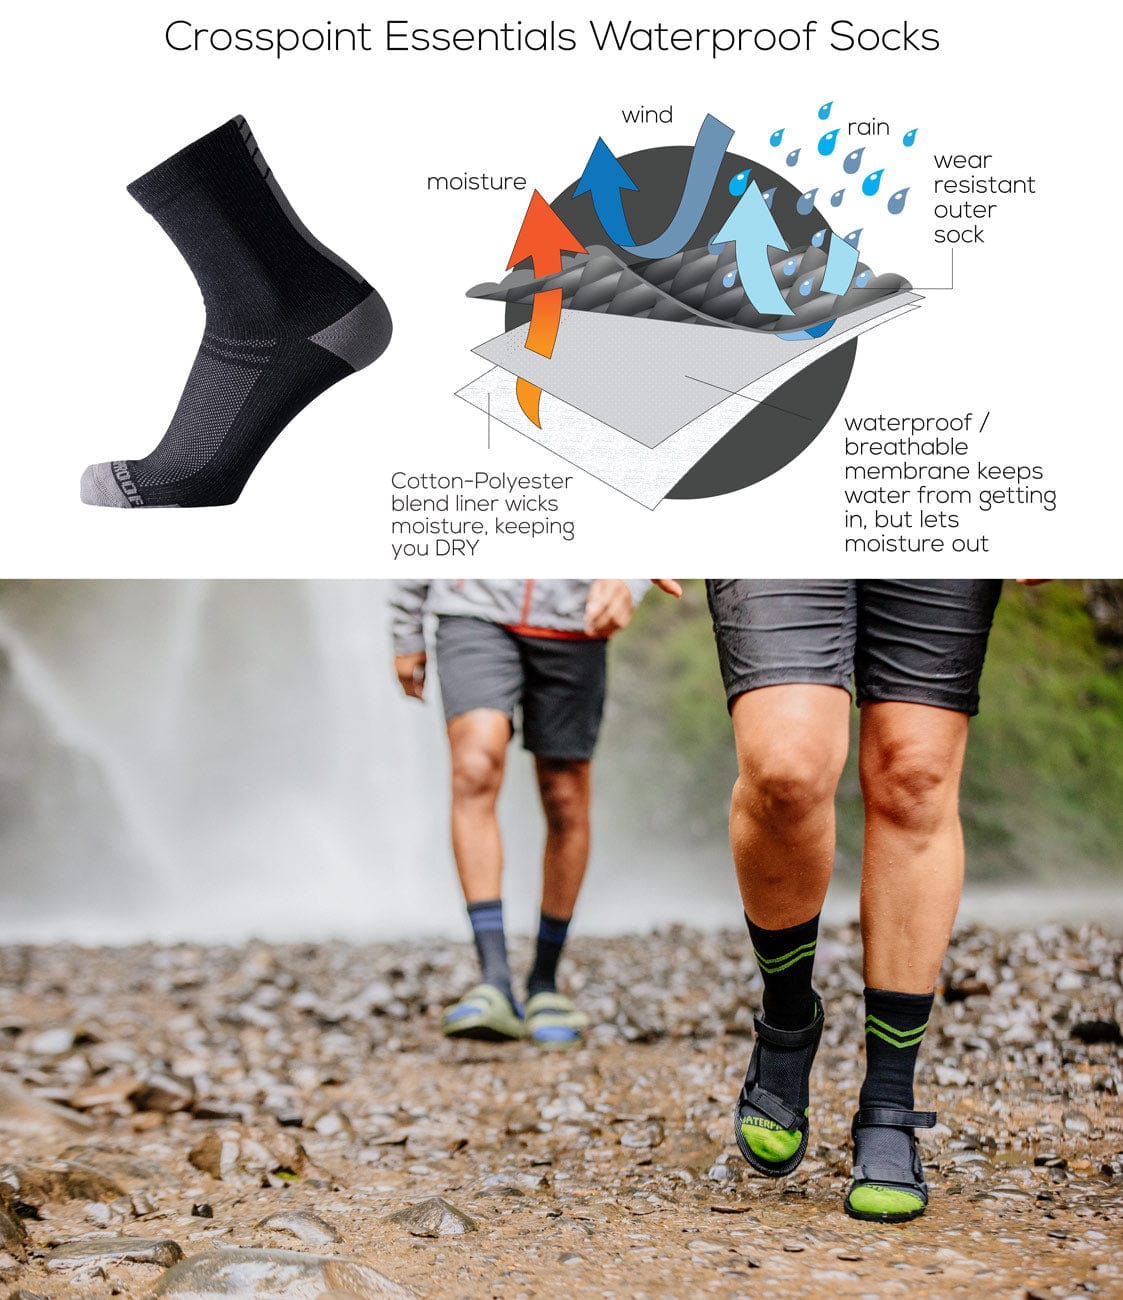 Crosspoint Essentials Waterproof Socks: Victory